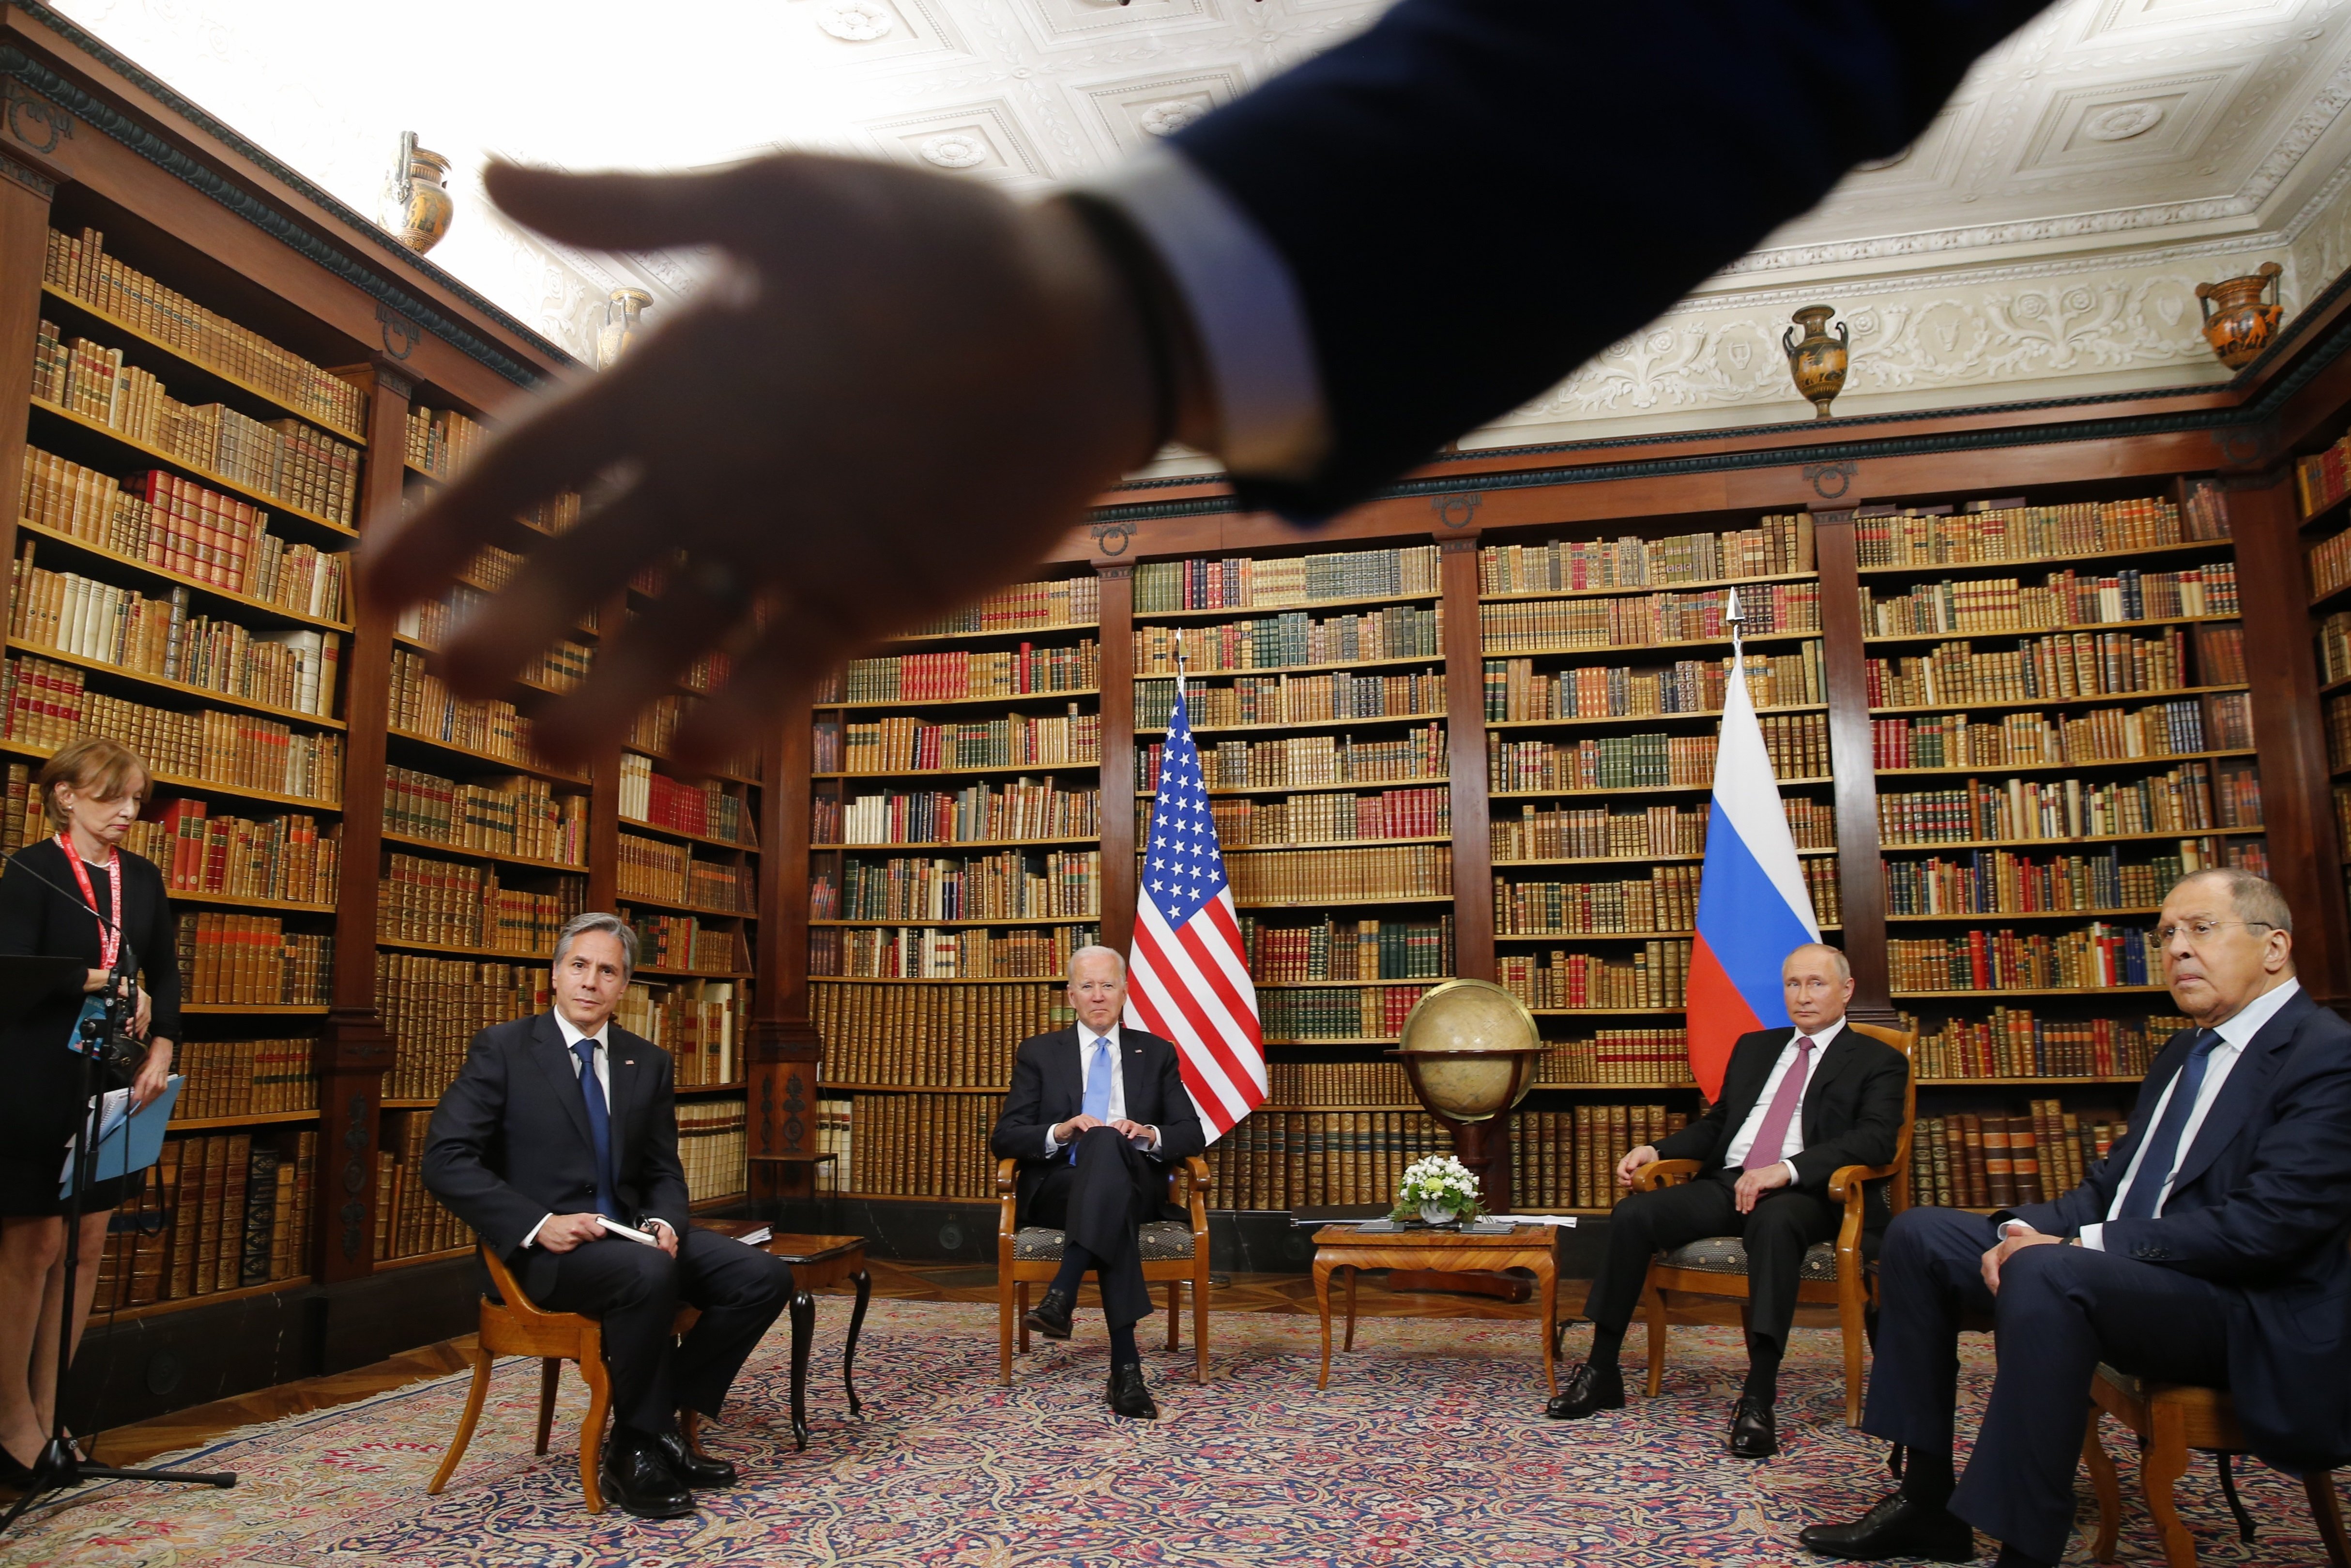 Primera trobada Biden-Putin: picabaralla entre periodistes i molta confusió